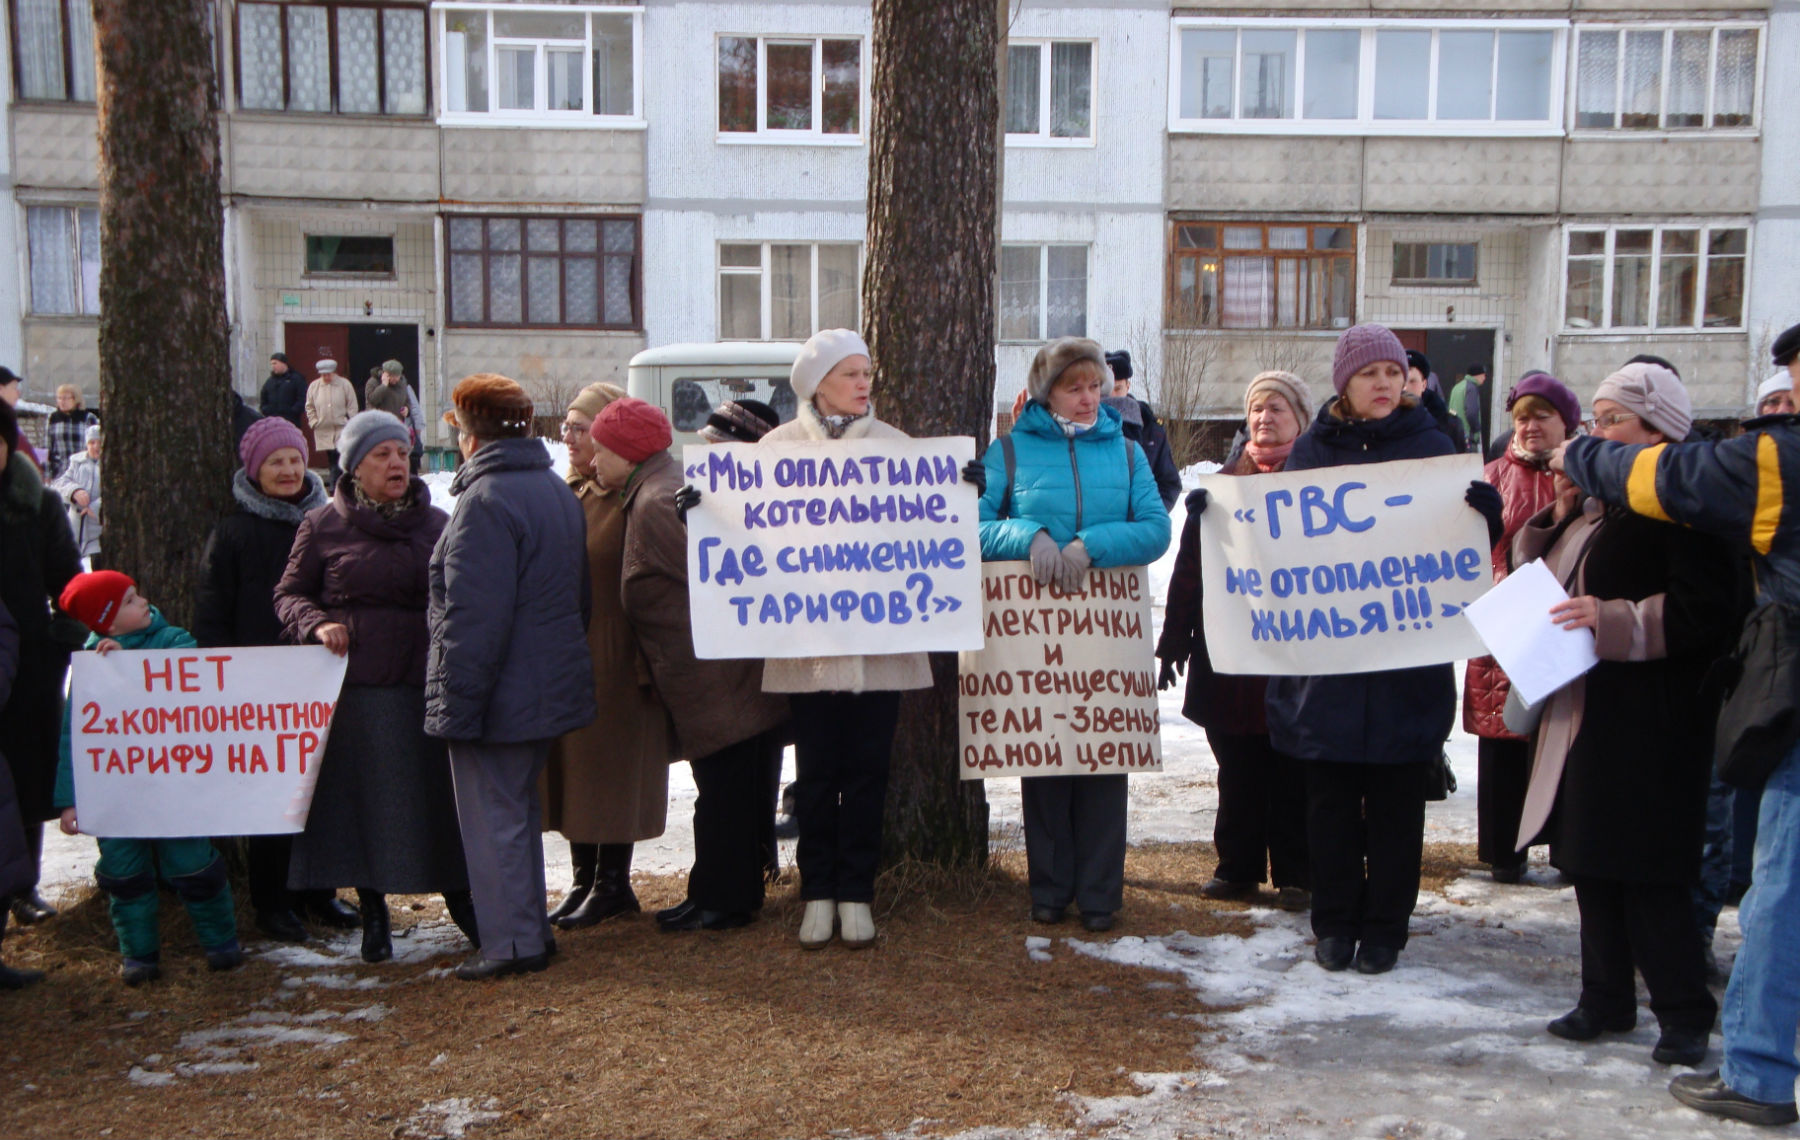 Отчет о наблюдении за публичным мероприятием в Подпорожском районе 28 марта 2015 года